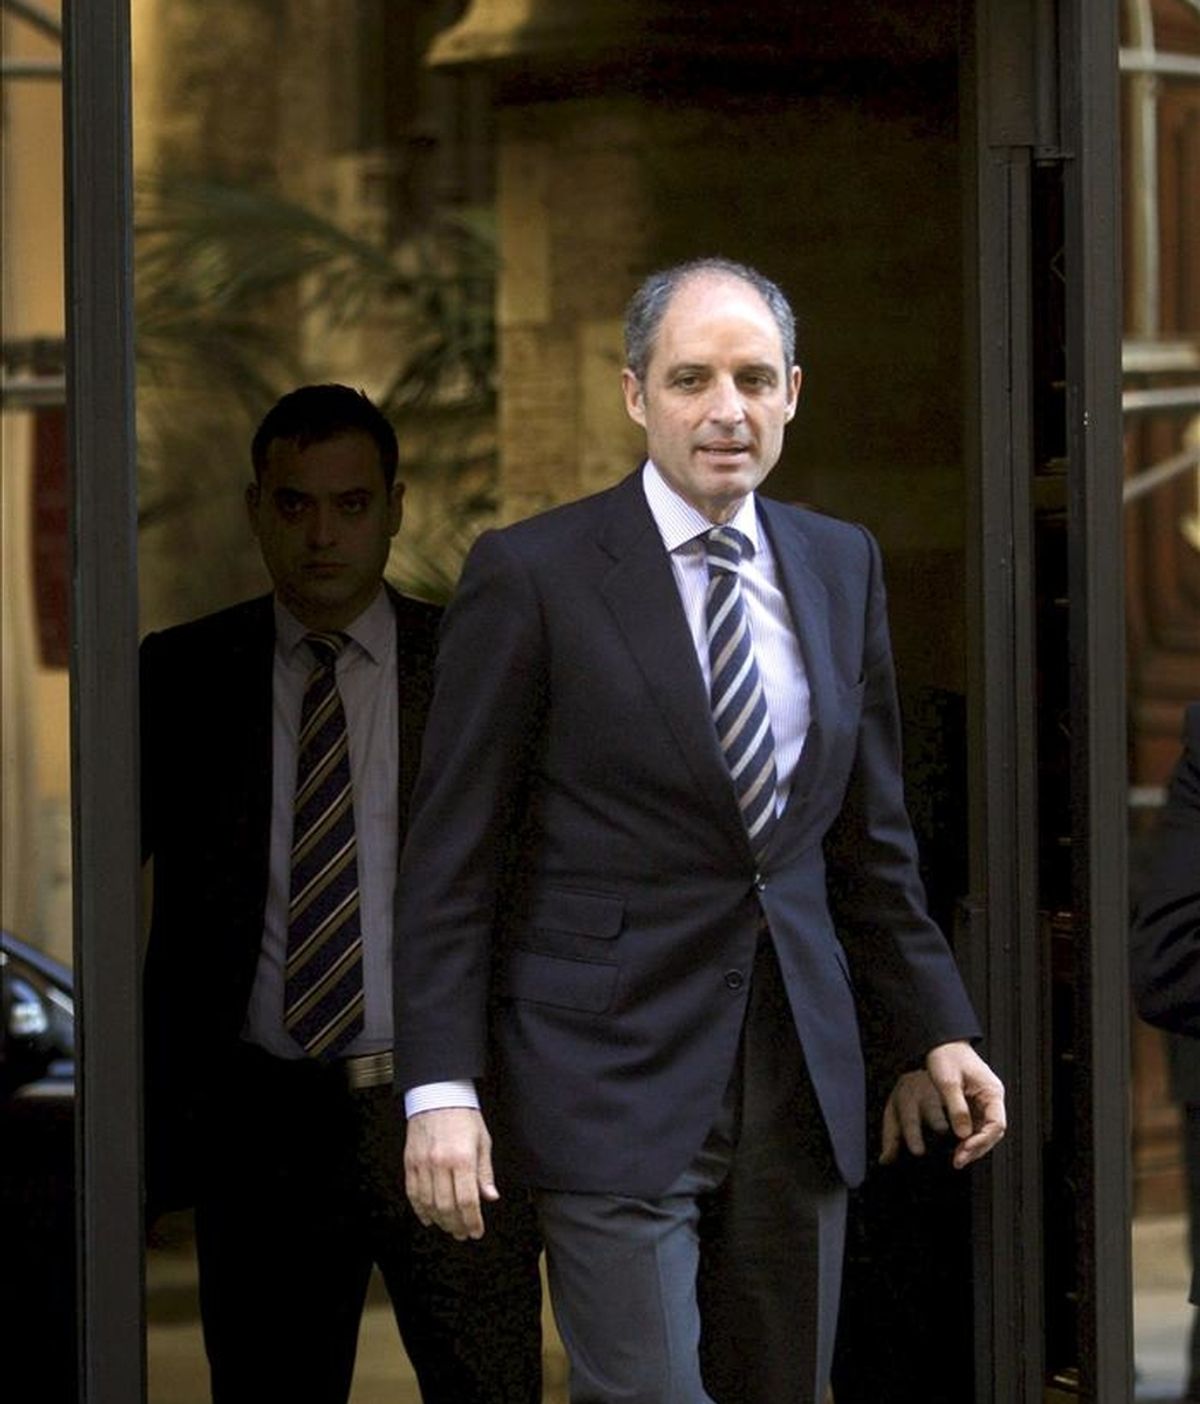 El president de la Generalitat, Francisco Camps, sale del Palau de la Generalitat tras la sesión plenaria semanal que ha celebrado hoy el Gobierno valenciano. EFE